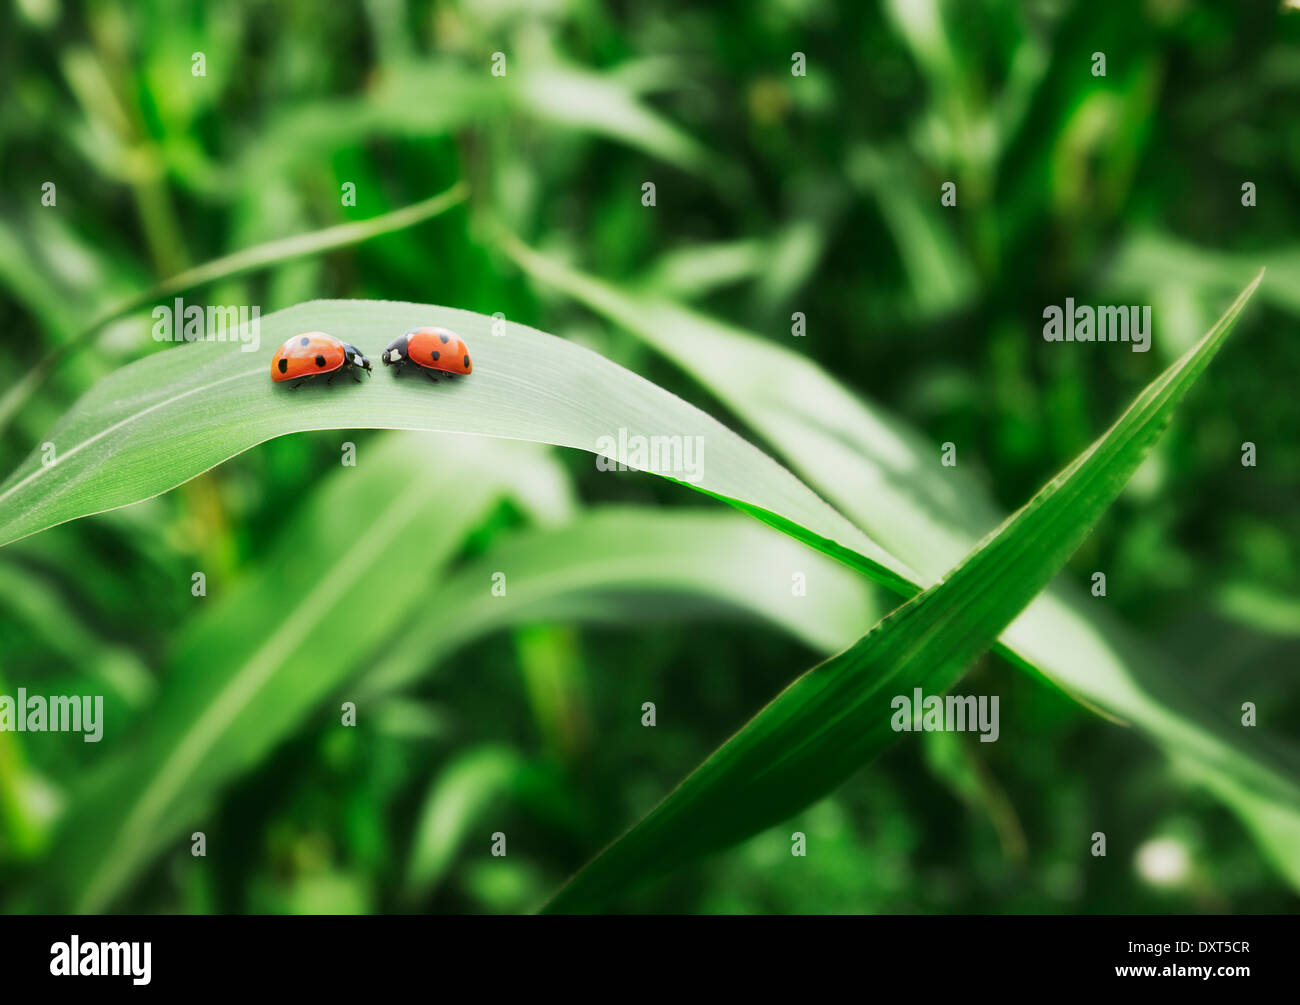 Ladybugs face to face on leaf Stock Photo